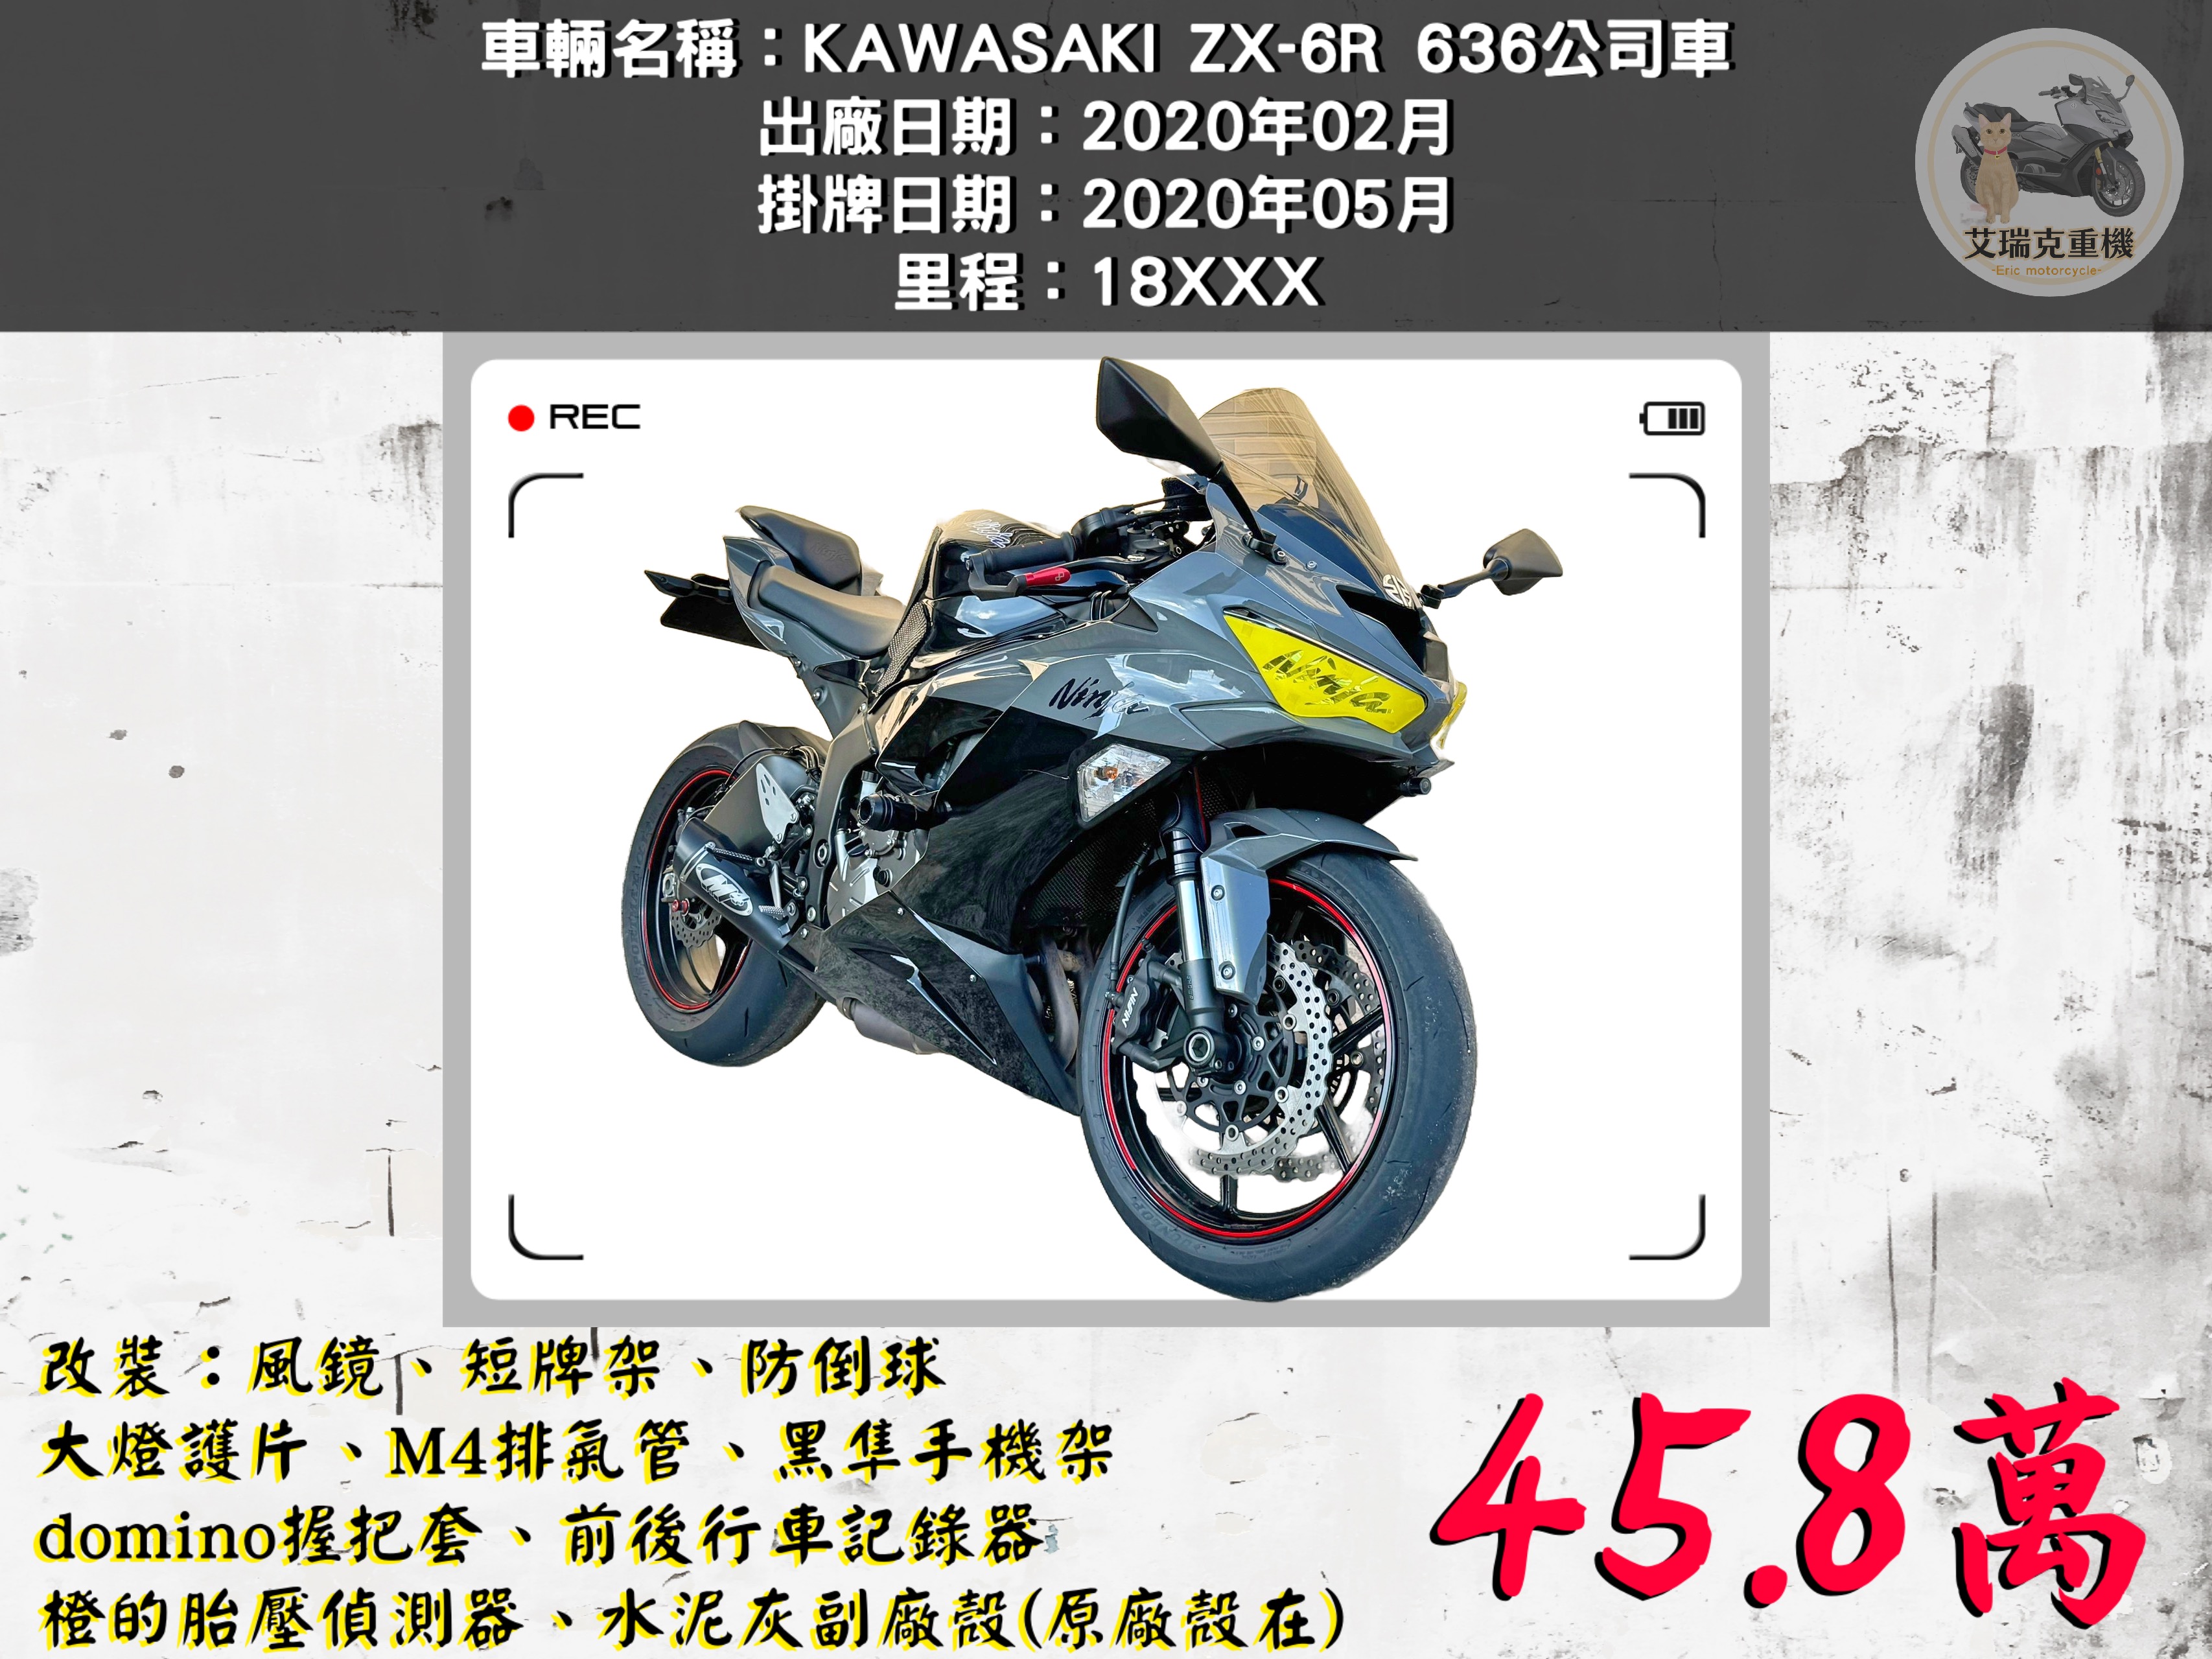 KAWASAKI NINJA ZX-6R - 中古/二手車出售中 KAWASAKI ZX-6R 636公司車 | 艾瑞克重機